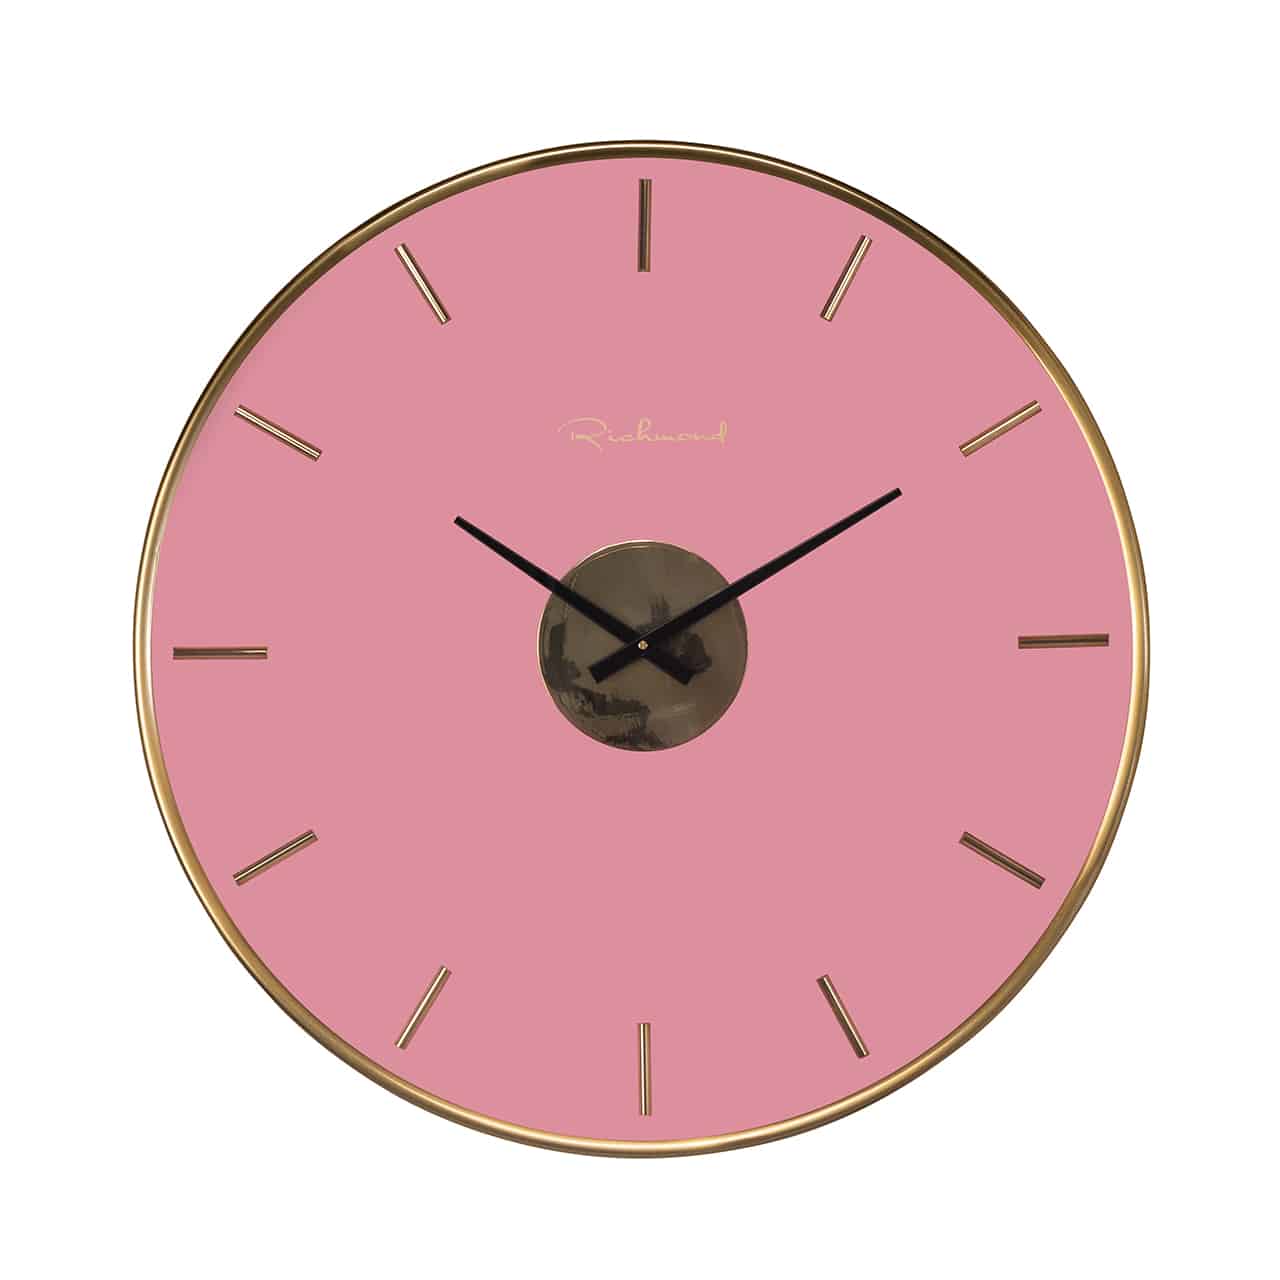 Runde Wanduhr mit goldenem Rahmen und pinkfarbenem Ziffernblatt, darauf kleine Goldleisten in einer 5 Minuten Einteilung; mittig eine kleine runde Scheibe in gold, an der kleine, schwarze Uhrzeiger angebracht sind.